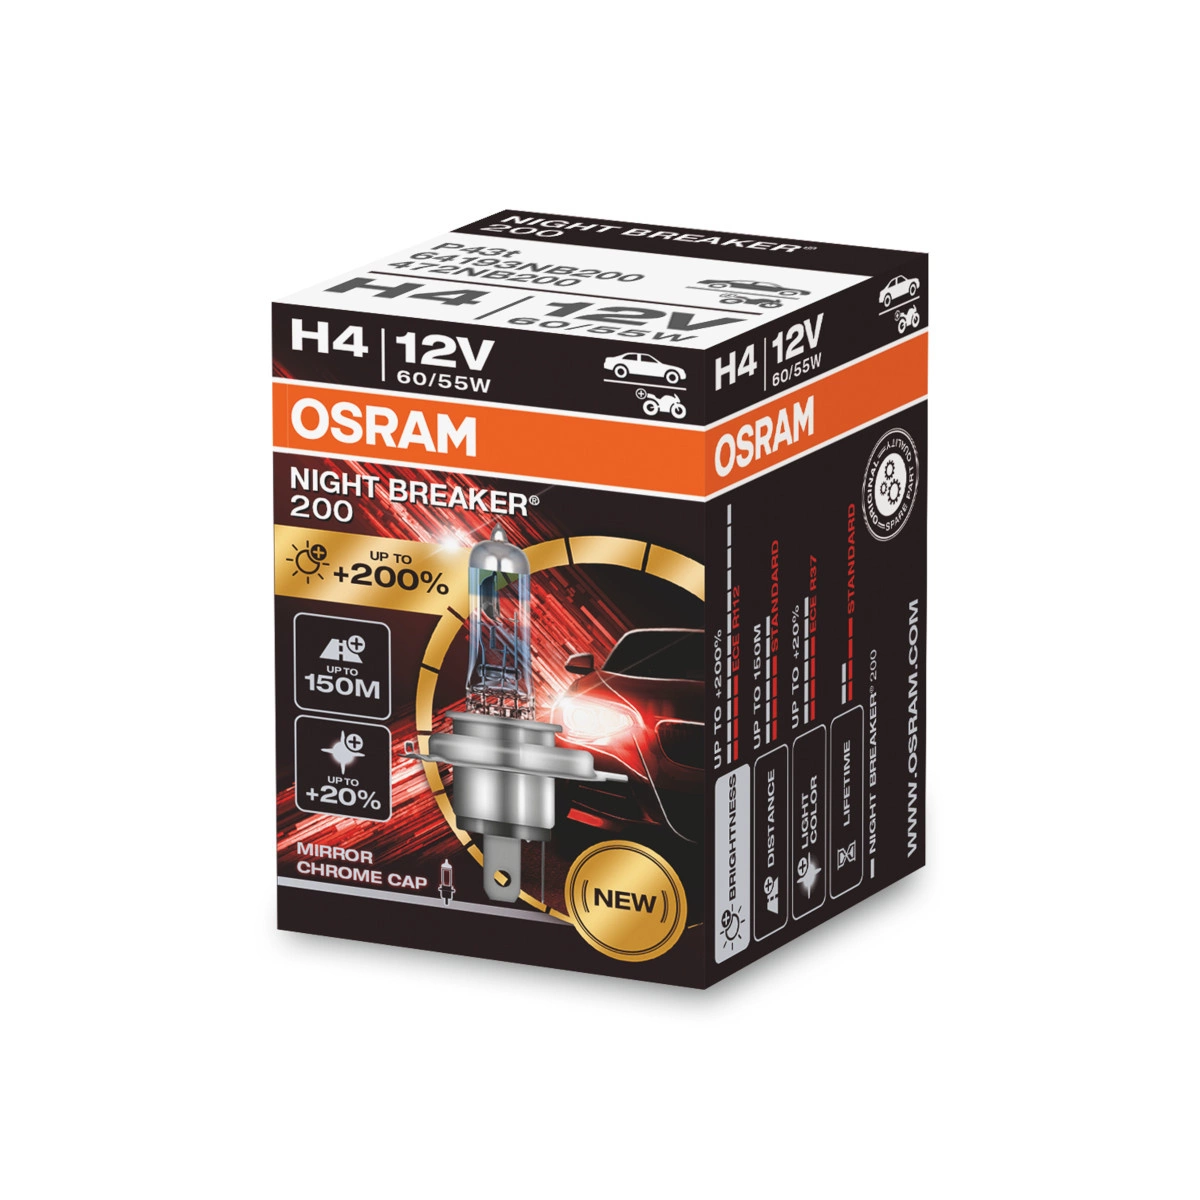 Żarówki H4 OSRAM Night Breaker 200 12V 60/55W - sklep